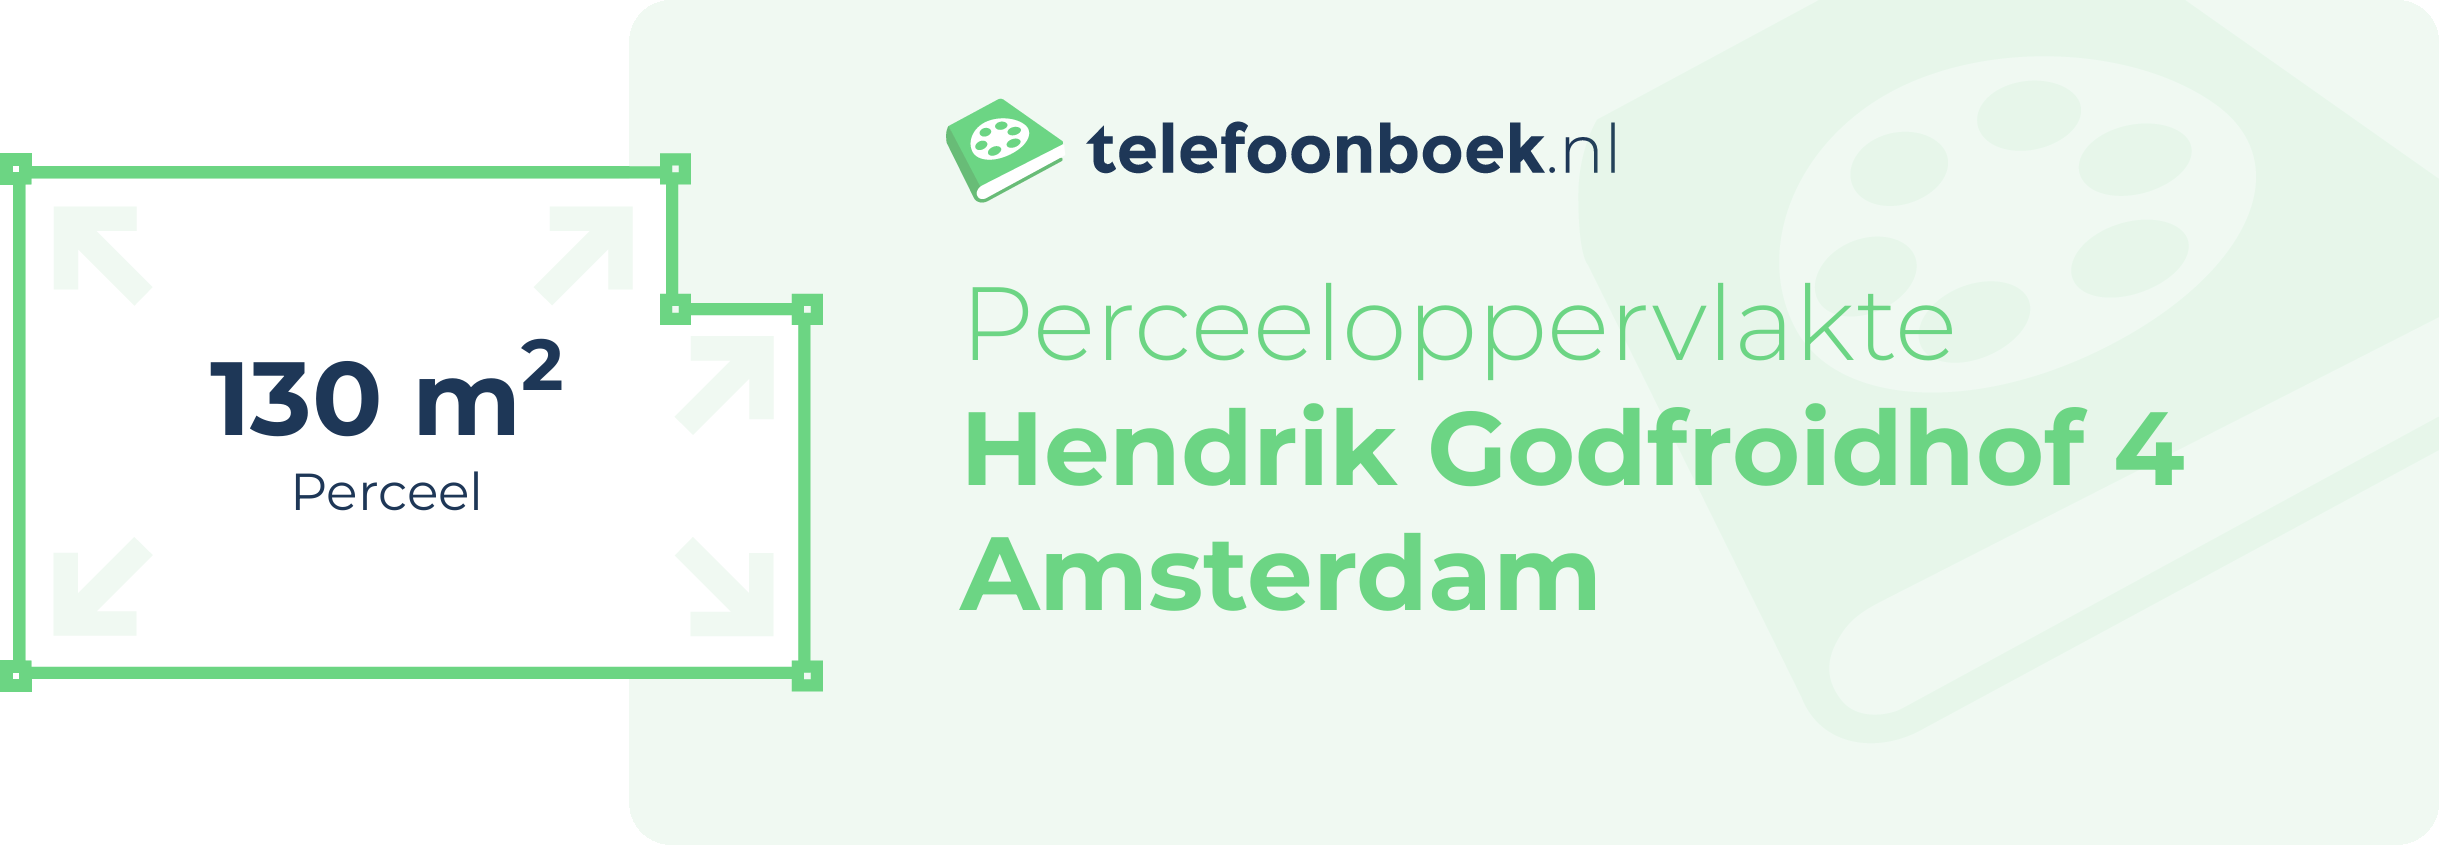 Perceeloppervlakte Hendrik Godfroidhof 4 Amsterdam